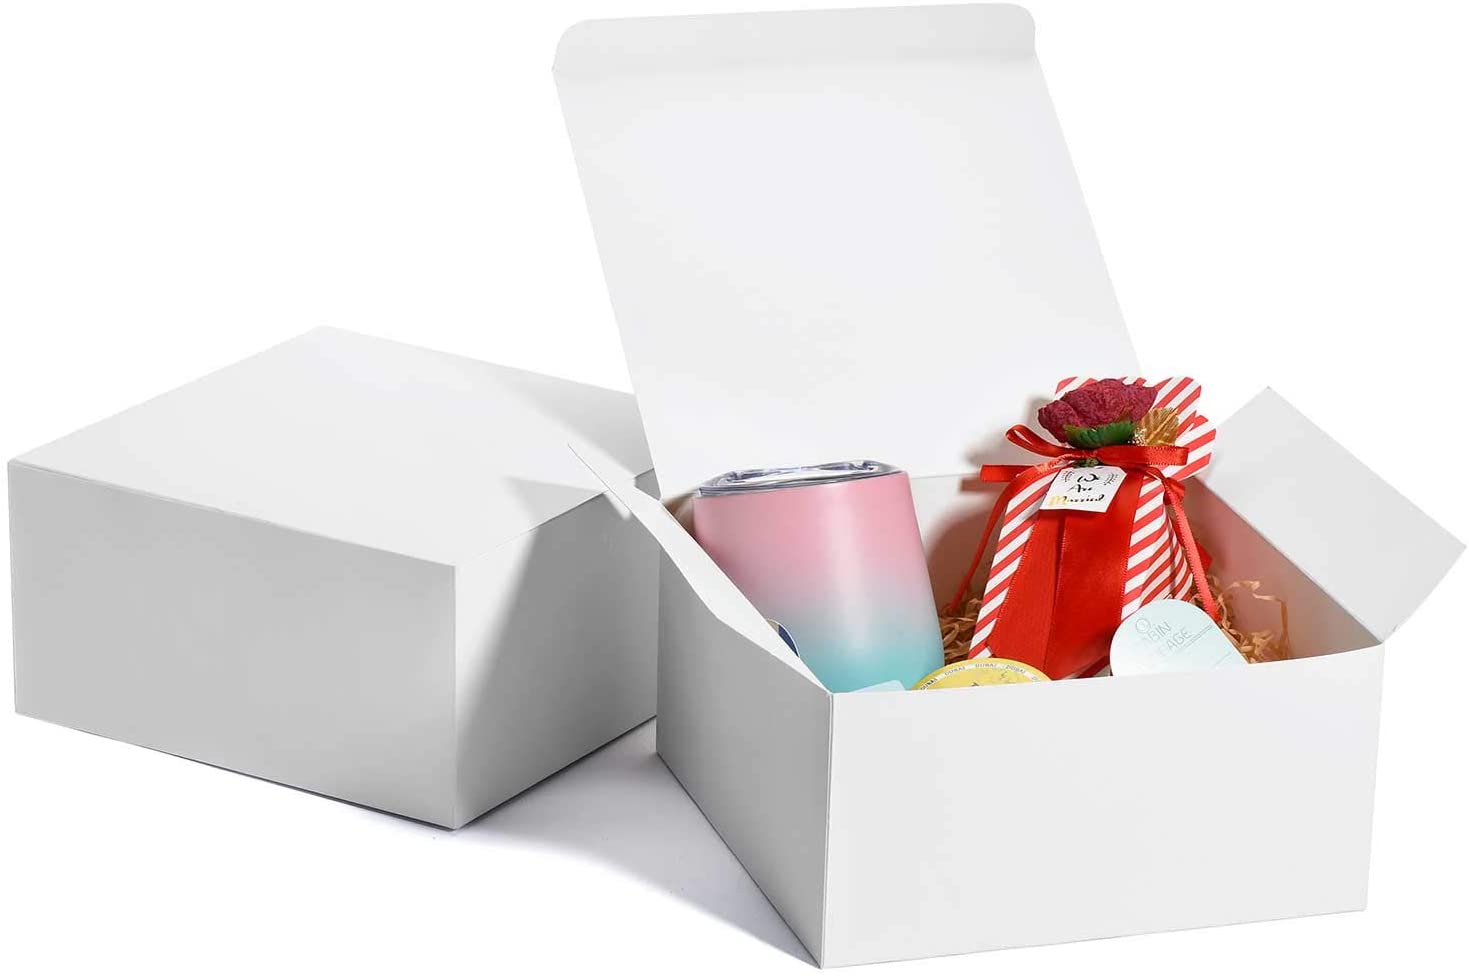 MESHA Cardboard Gift Boxes, 10-Pack